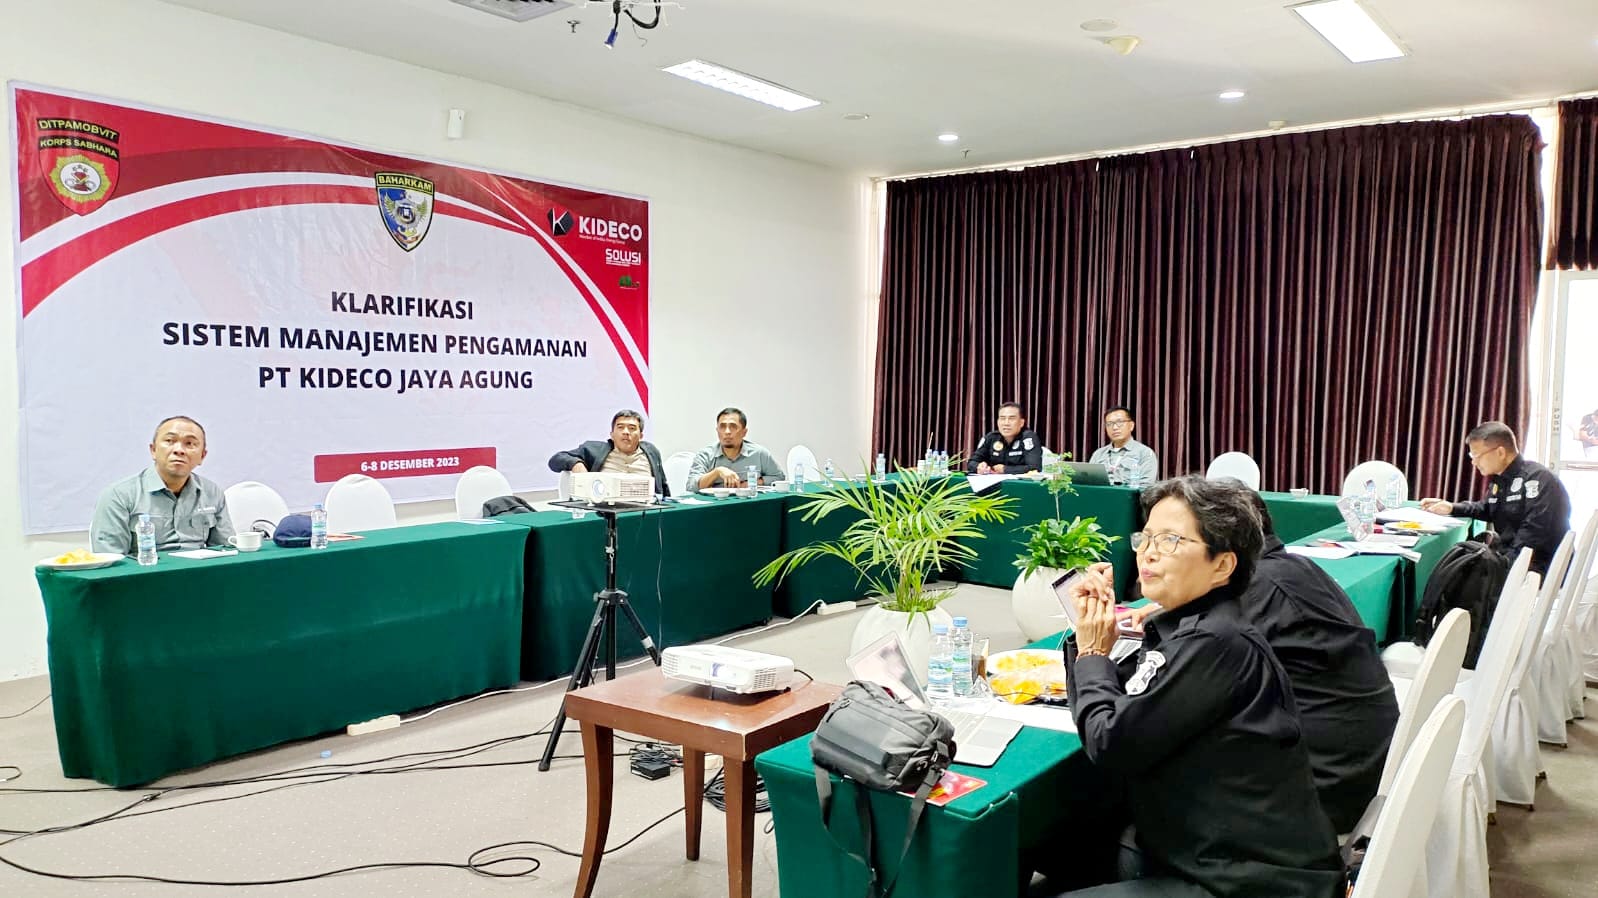 Baharkam Polri Audit Sistem Manajemen Pengamanan di PT. Kideco Jaya Agung